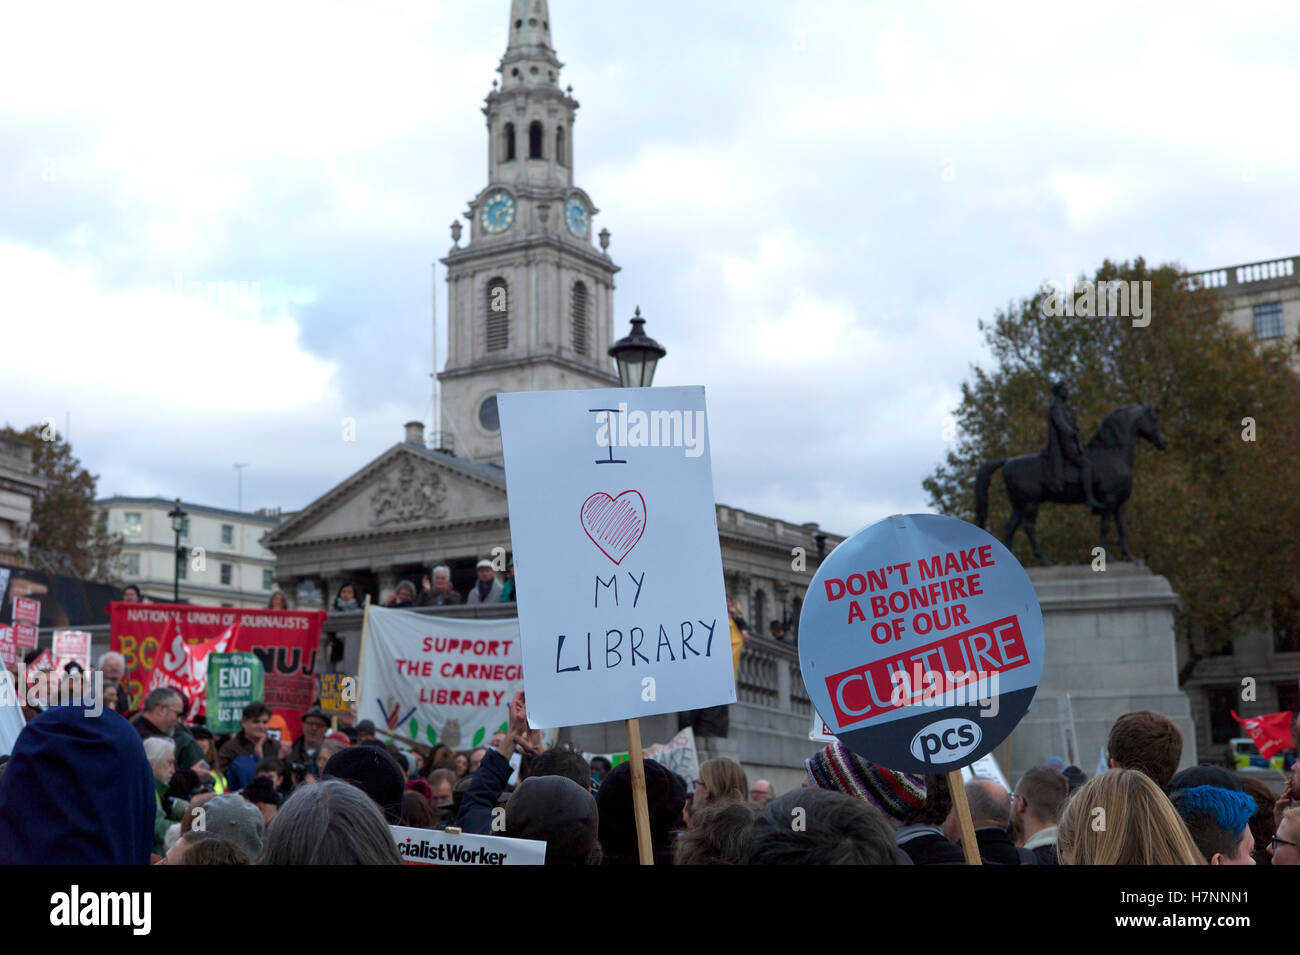 Speichern Sie unsere Bibliotheken-Demonstration am Trafalgar Square in London Stockfoto